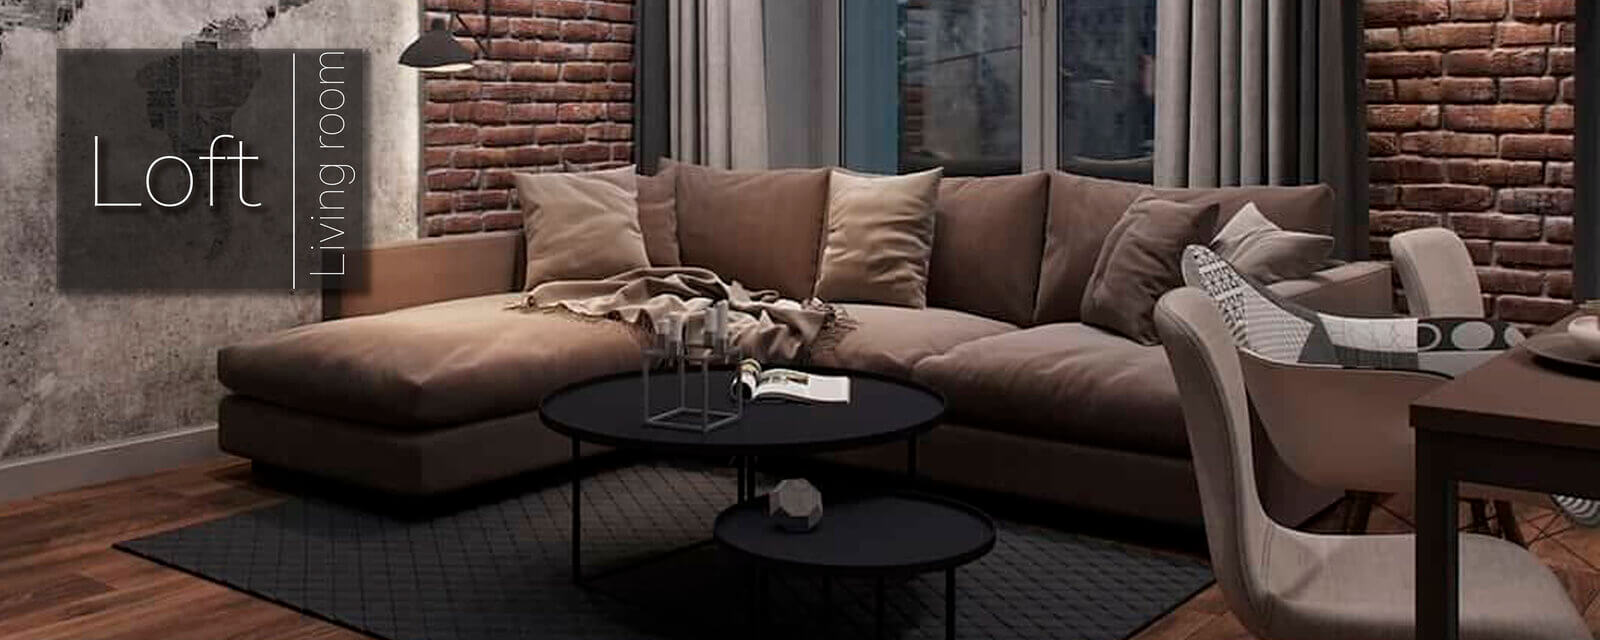 Modern Loft Living Room Design